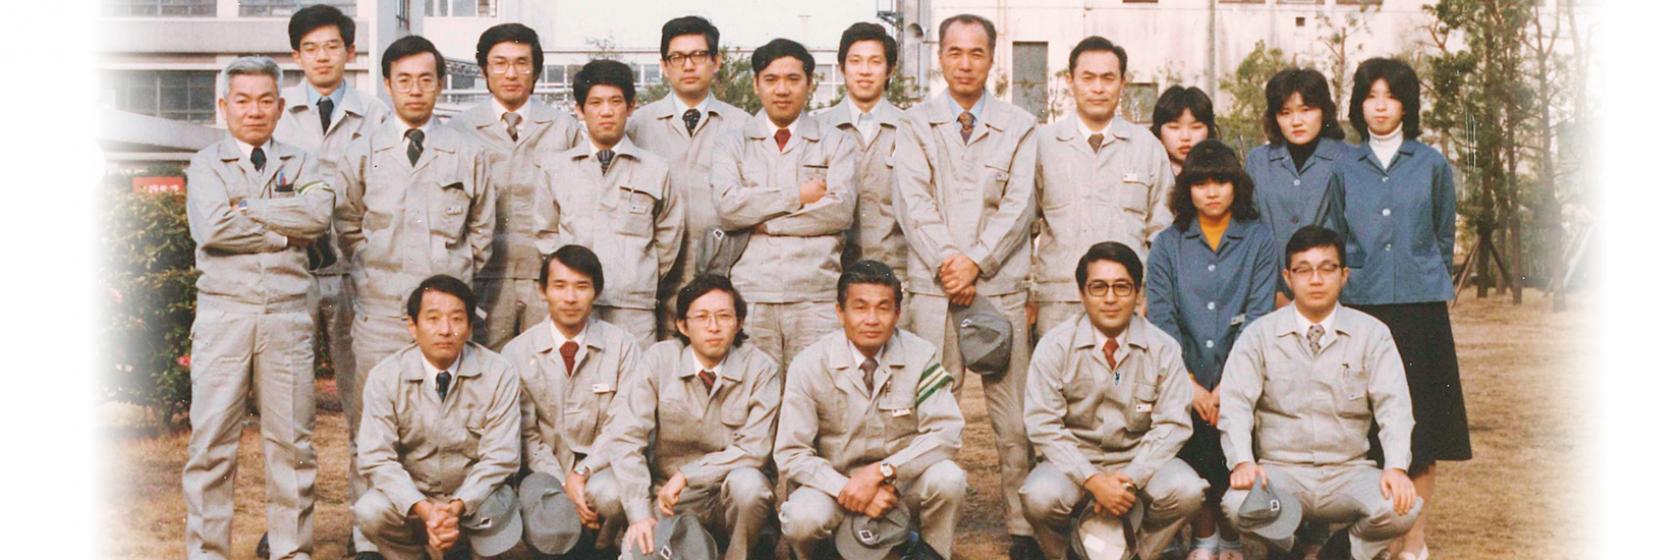 在大阪制作所任职时与同事们的合影。前列右数第3位是冈崎。后列正中手臂交叉在胸前的是木村